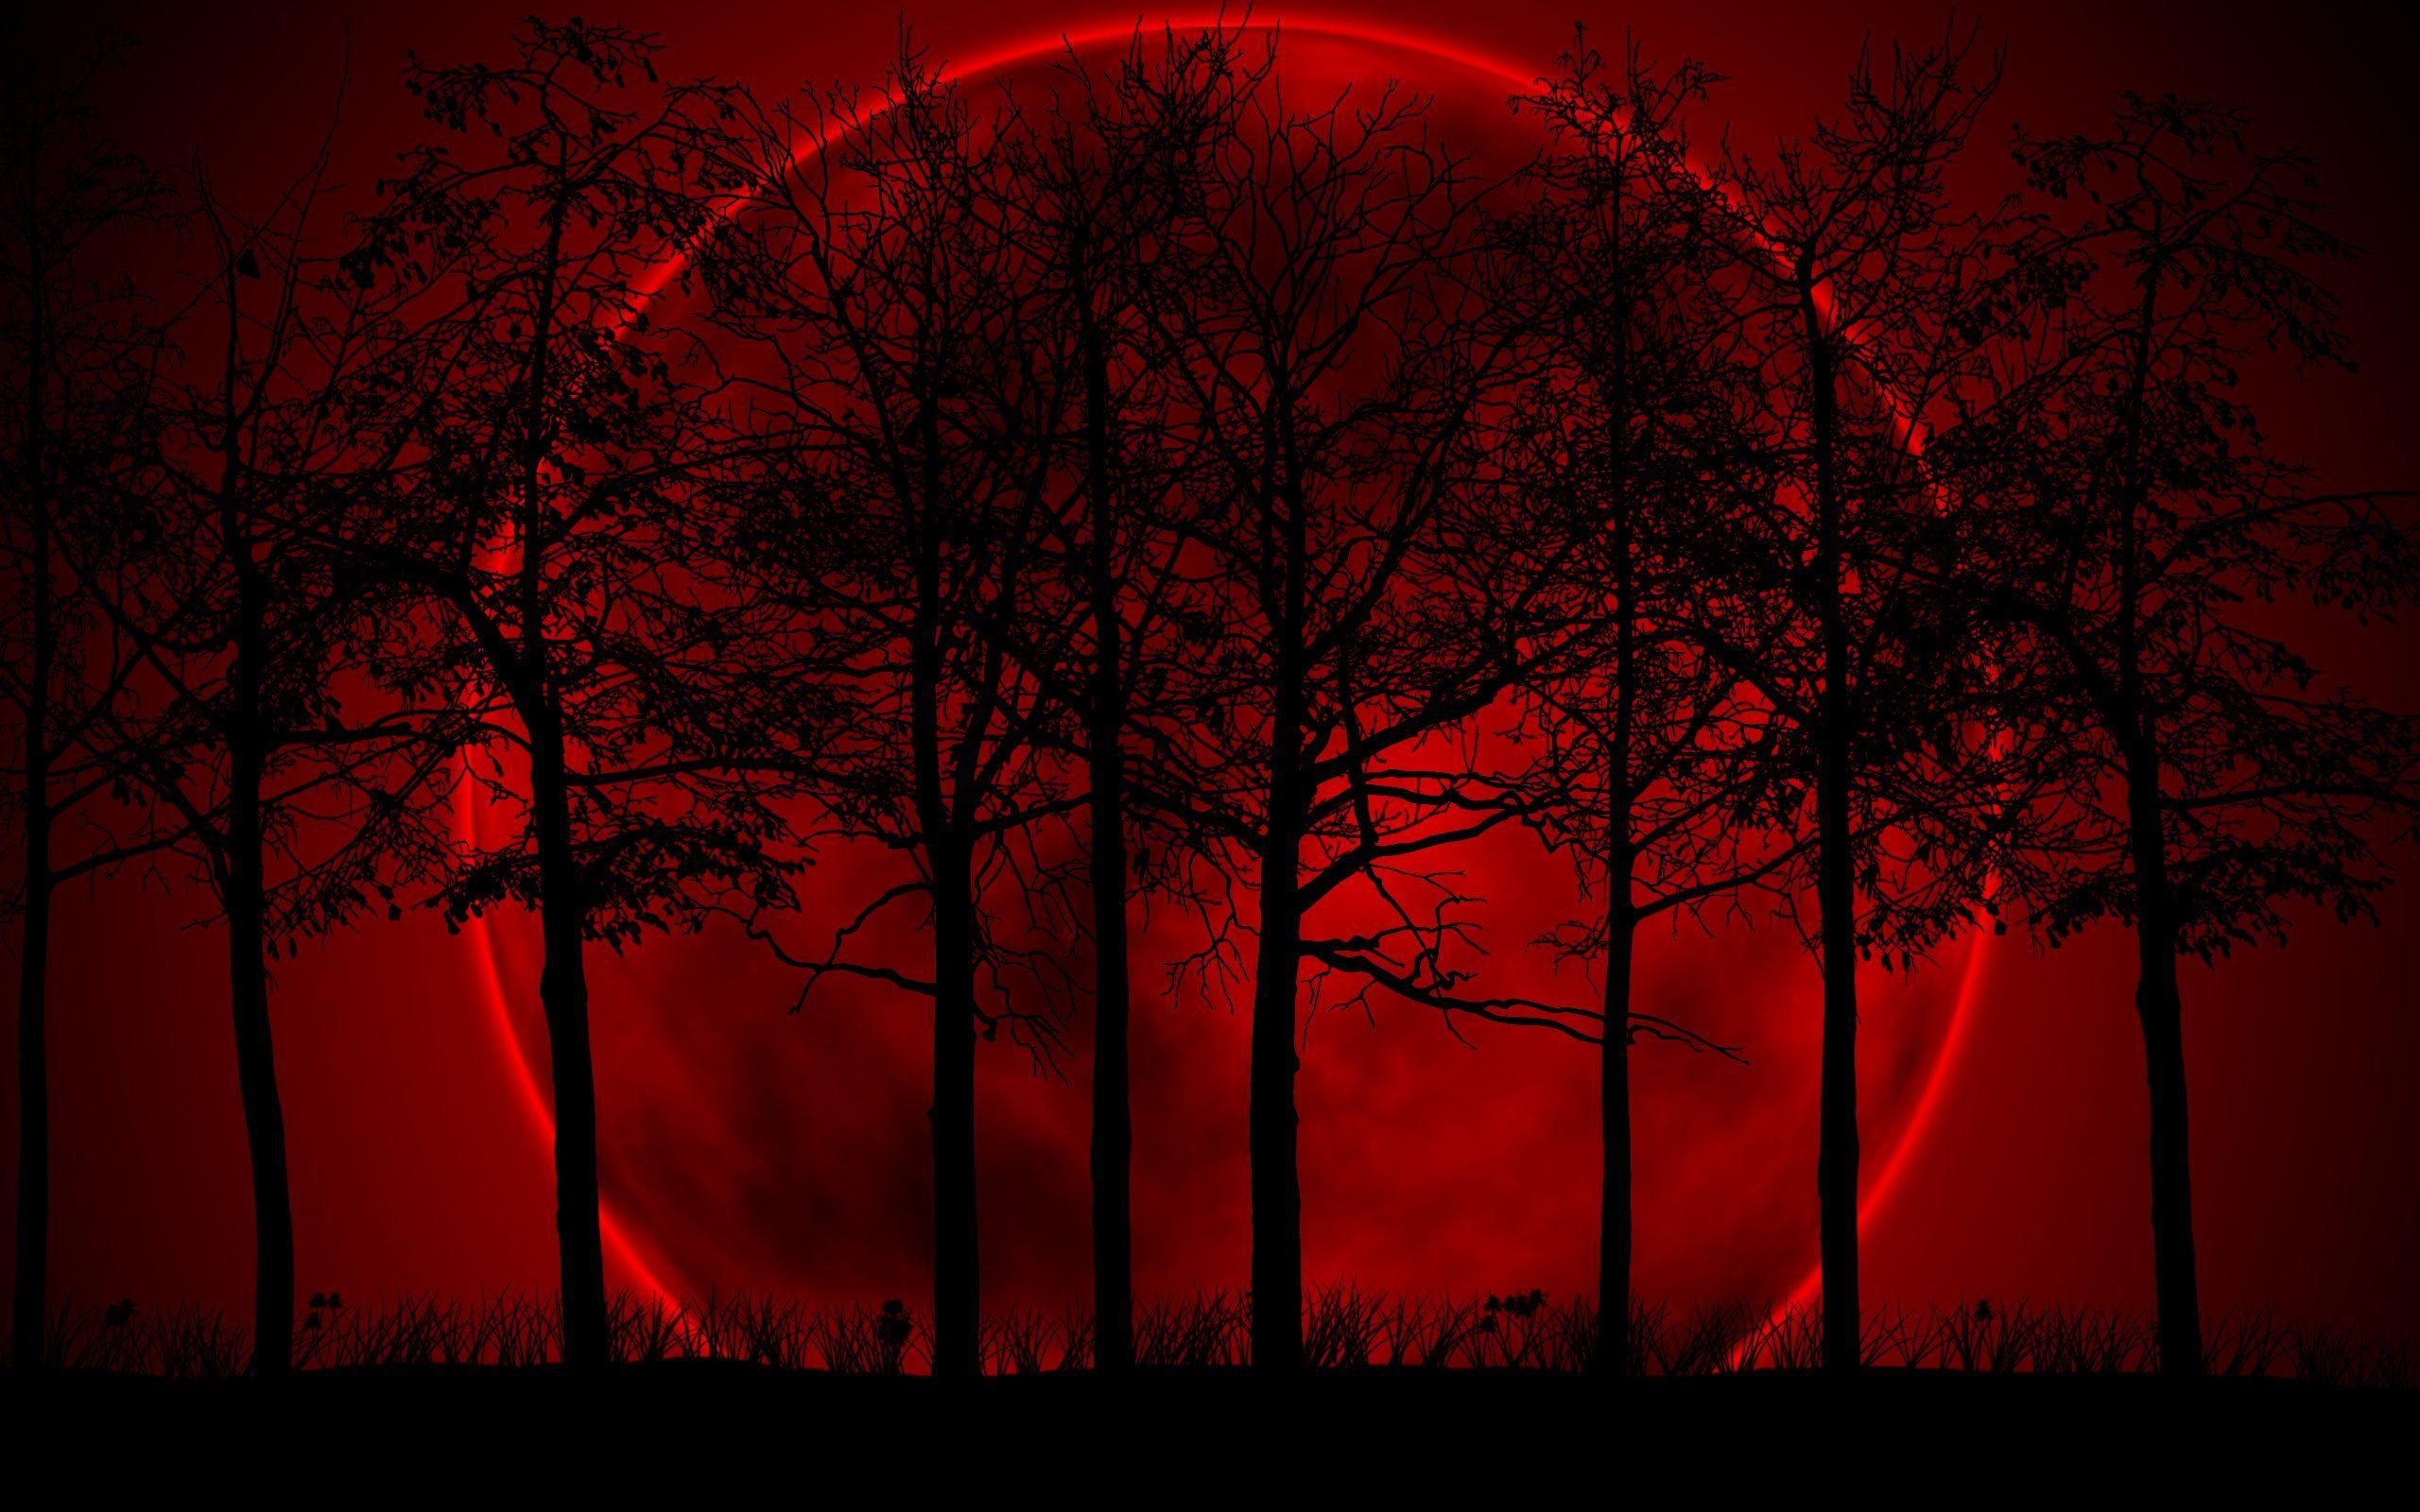 Mặt trăng máu: Sắc đỏ của mặt trăng máu thật đặc biệt và lôi cuốn. Để tận hưởng trải nghiệm ấn tượng này, hãy thưởng thức những hình ảnh đầy hoang dã và bí ẩn của mặt trăng máu thông qua bộ sưu tập của chúng tôi.